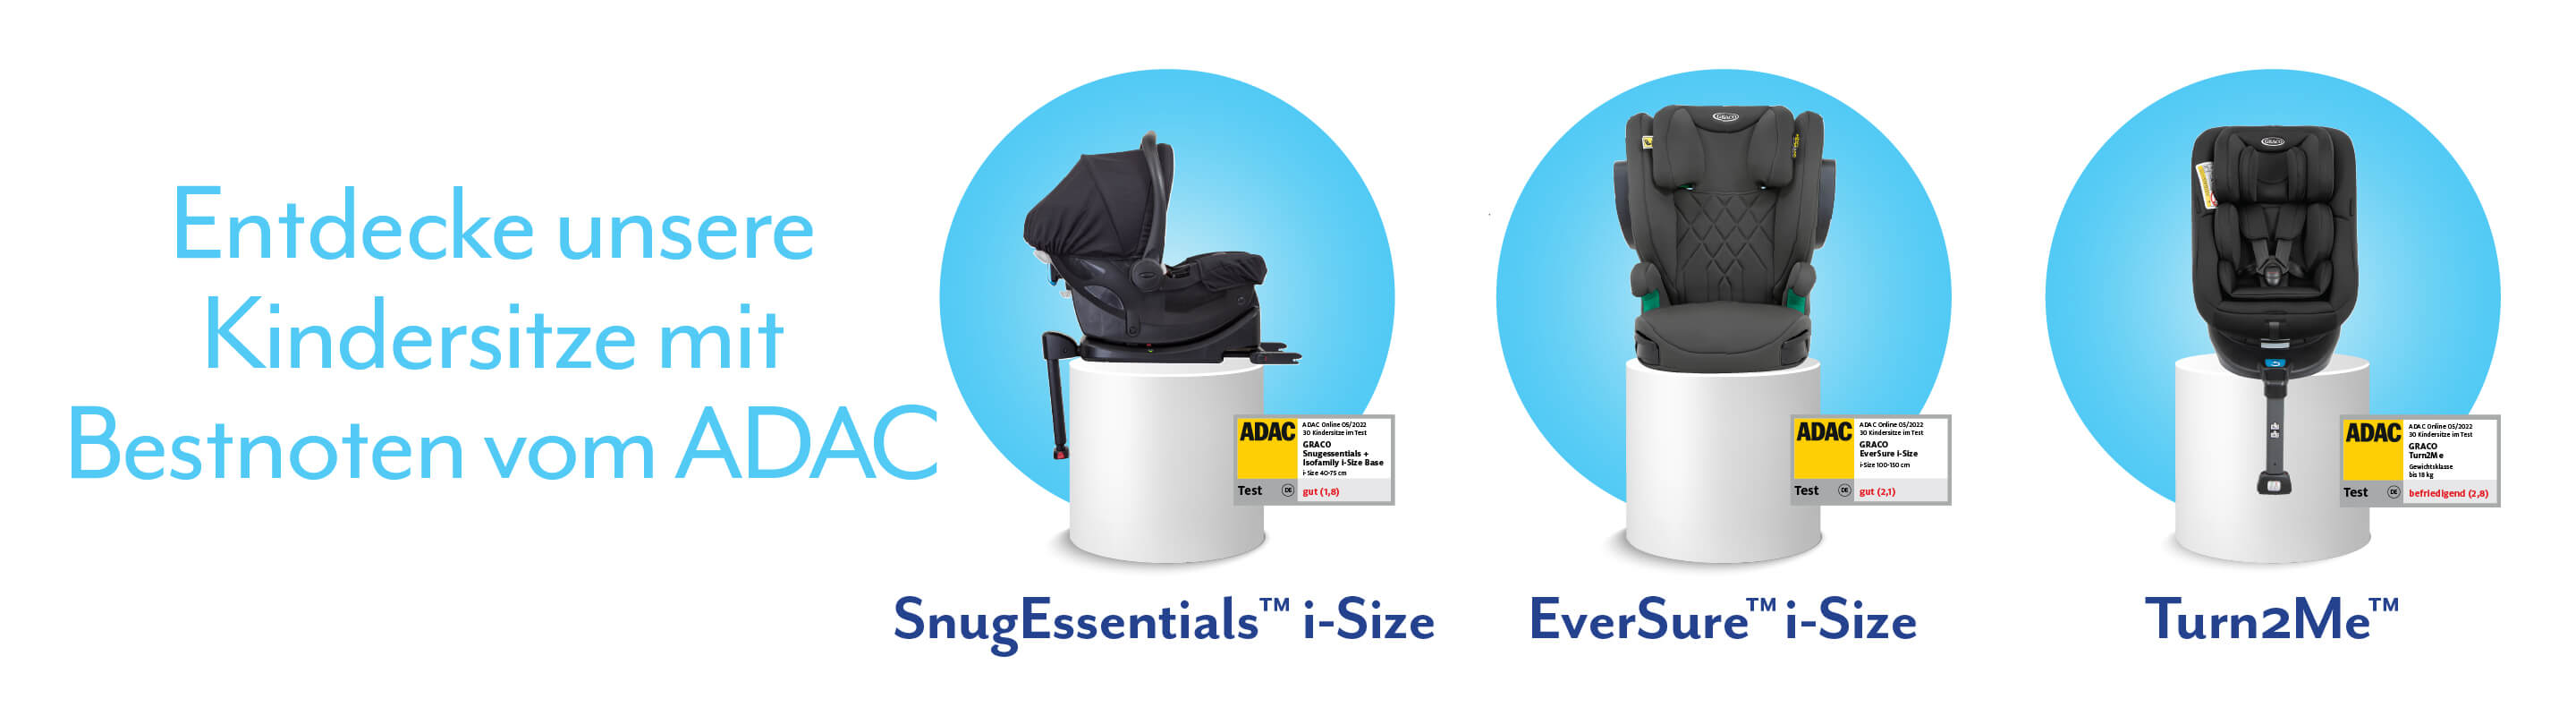 Graco Kindersitze SnugEssentials i-Size, EverSure i-Size and Turn2Me auf einem weißen Podest